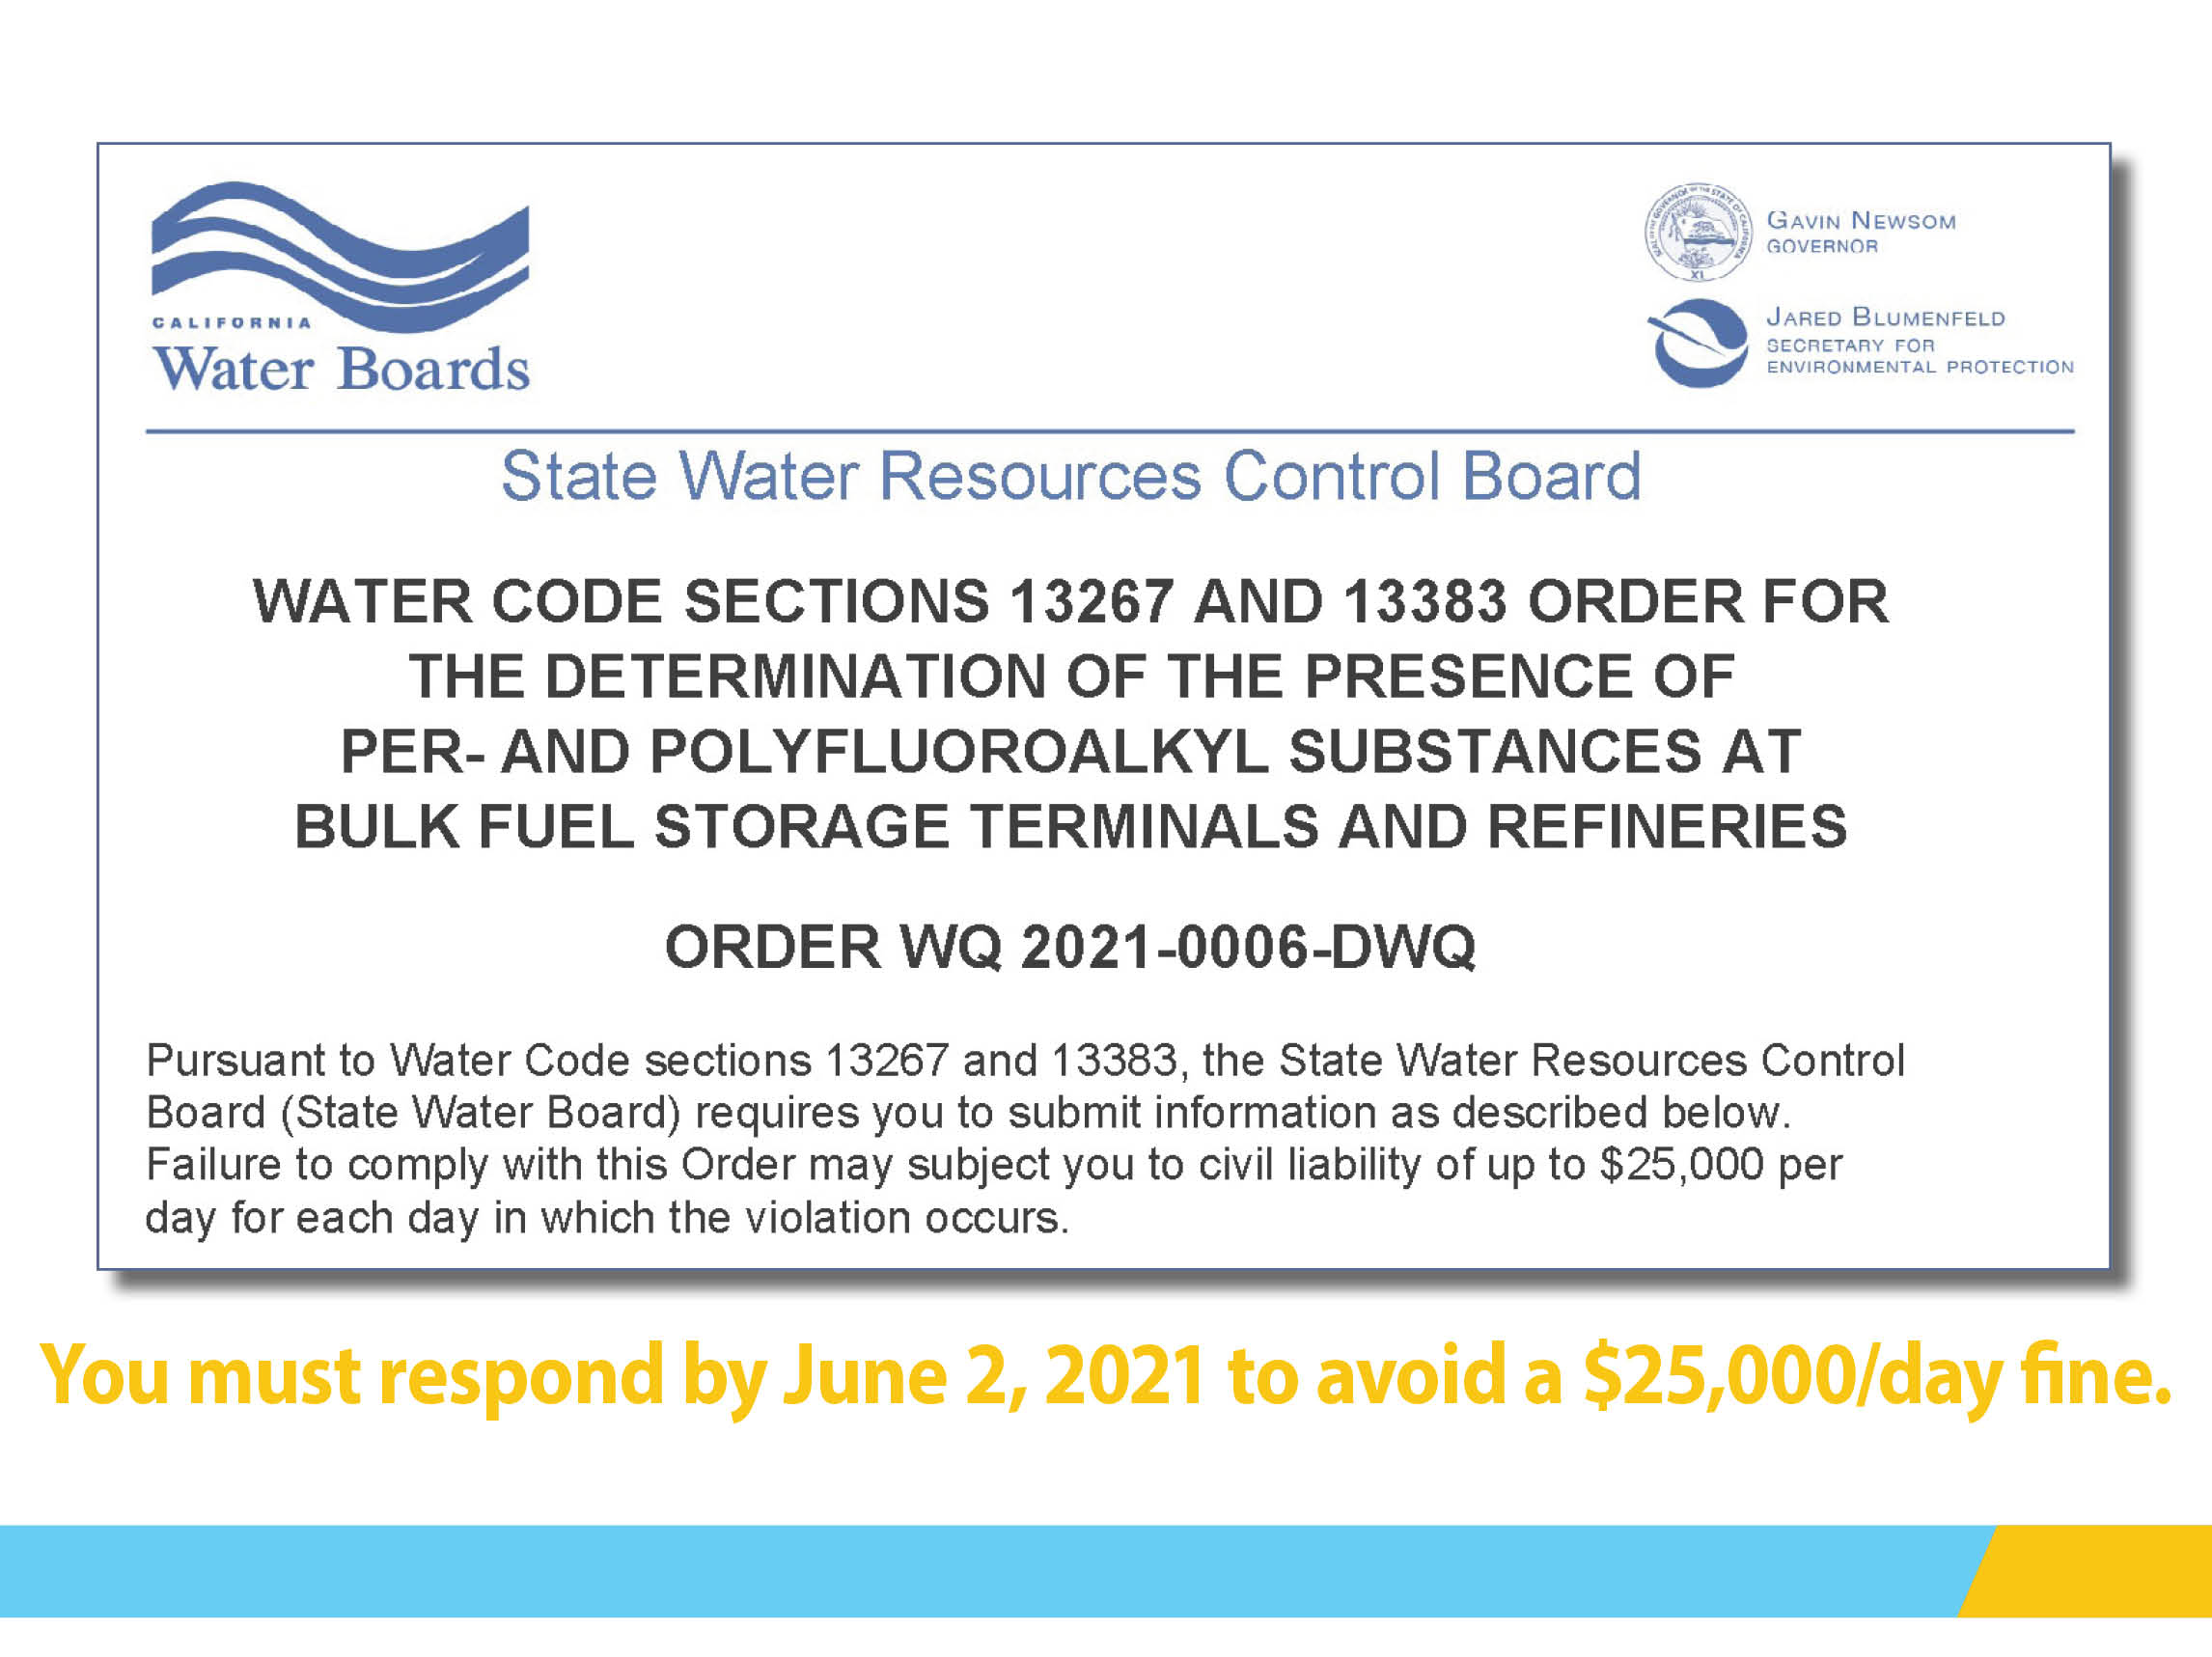 California Water Board notice bulk fuel storage terminals